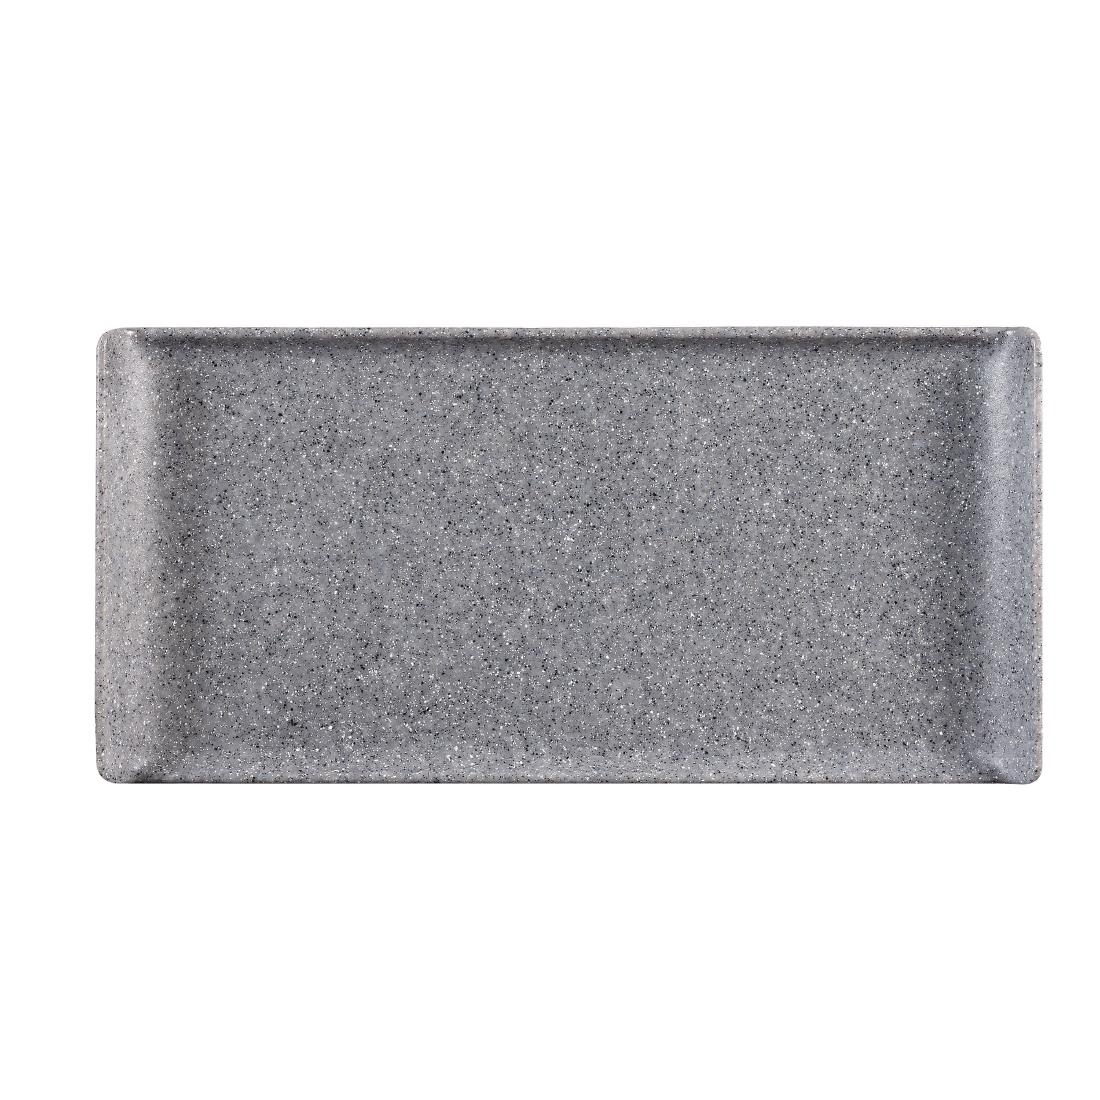 Churchill Melamine Rectangular Trays Granite 300mm (Pack of 6)